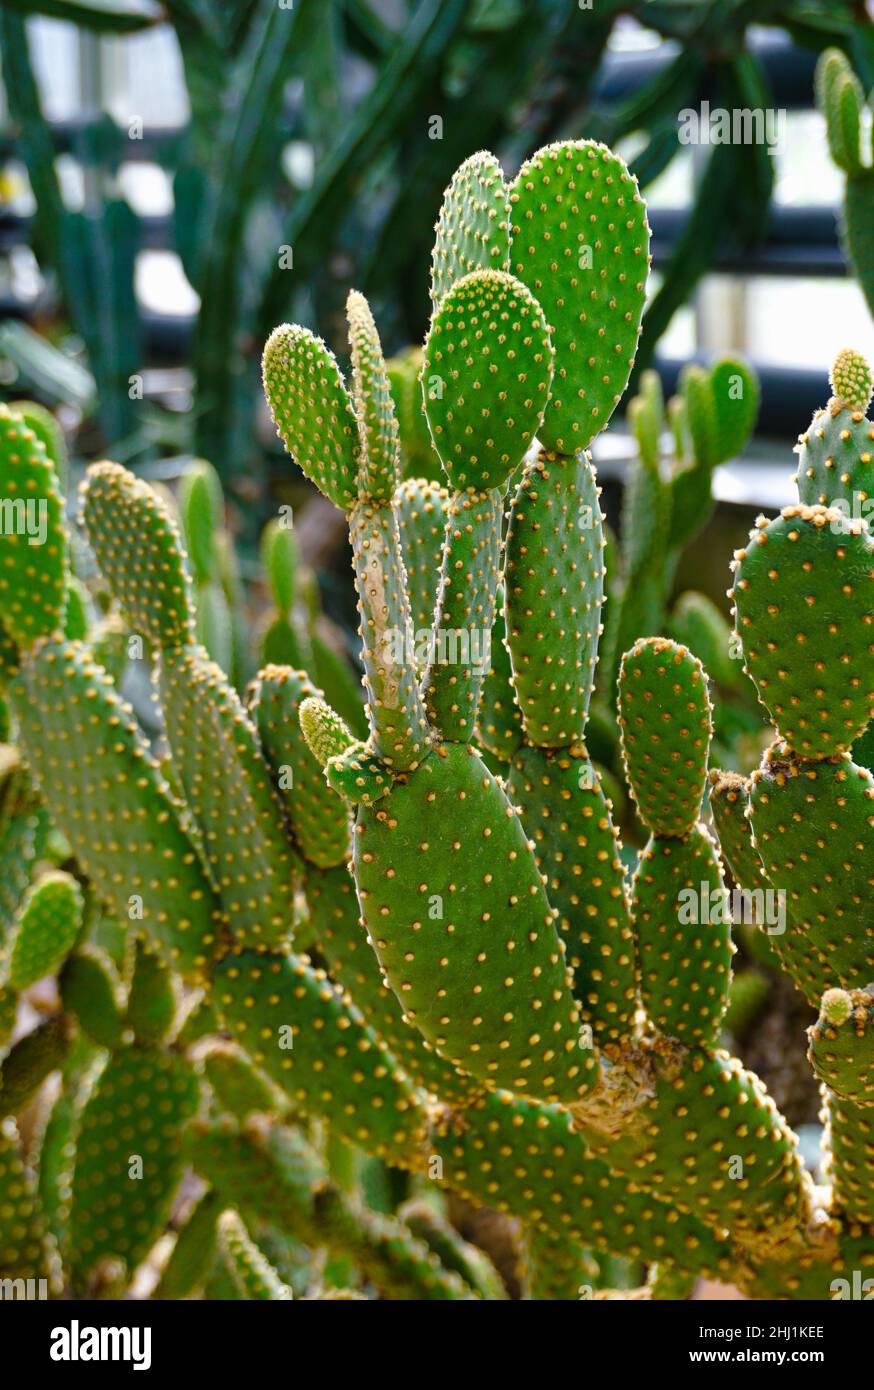 Green cactus in the botanical garden Stock Photo